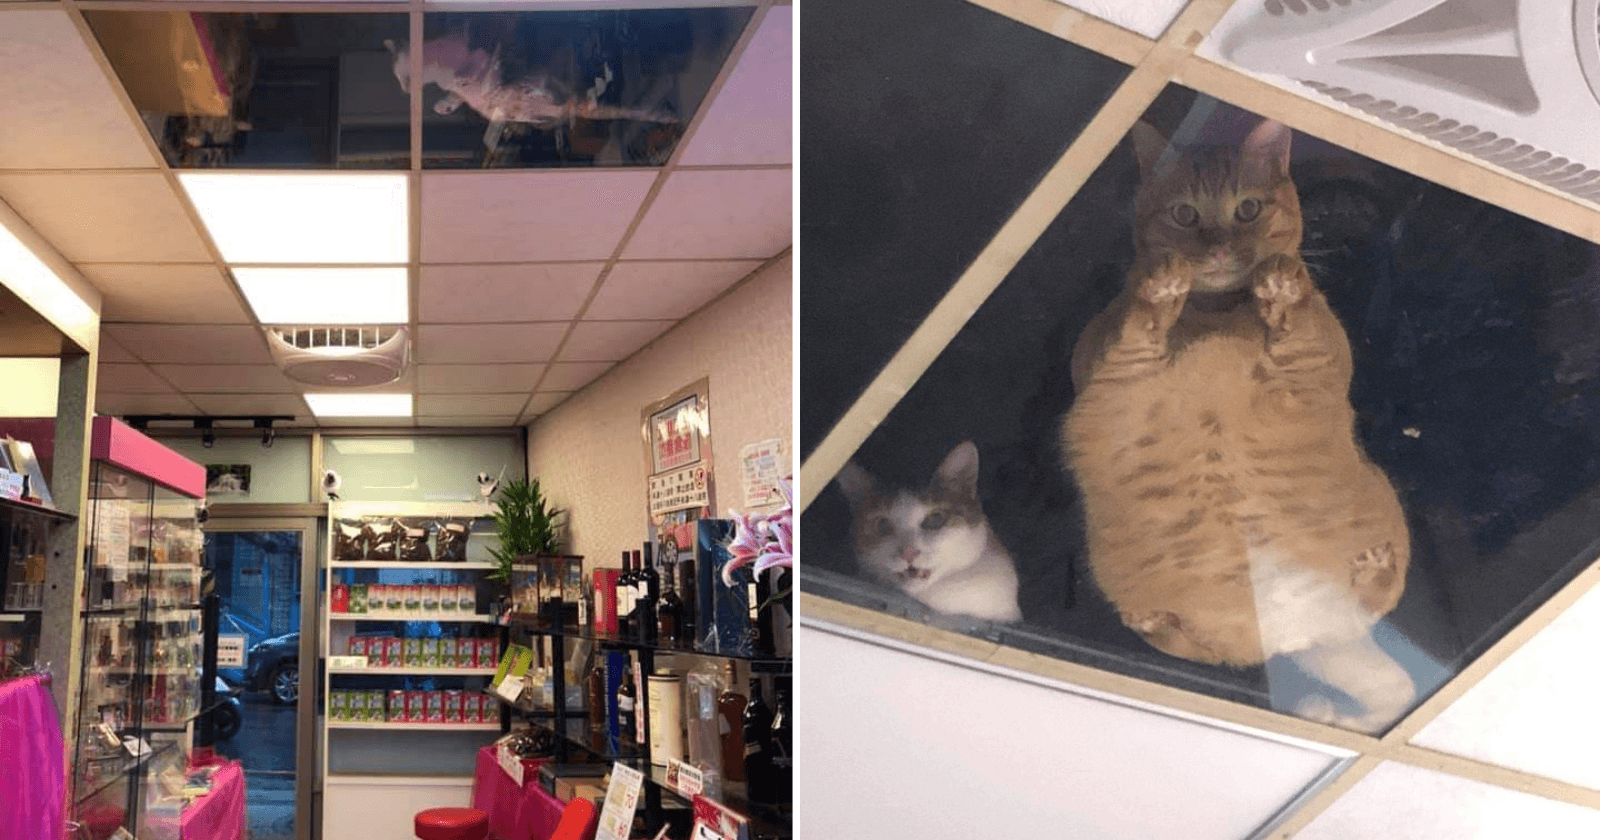 Dono de loja instala teto de vidro para gatos e rotina perturba (e encanta) clientes